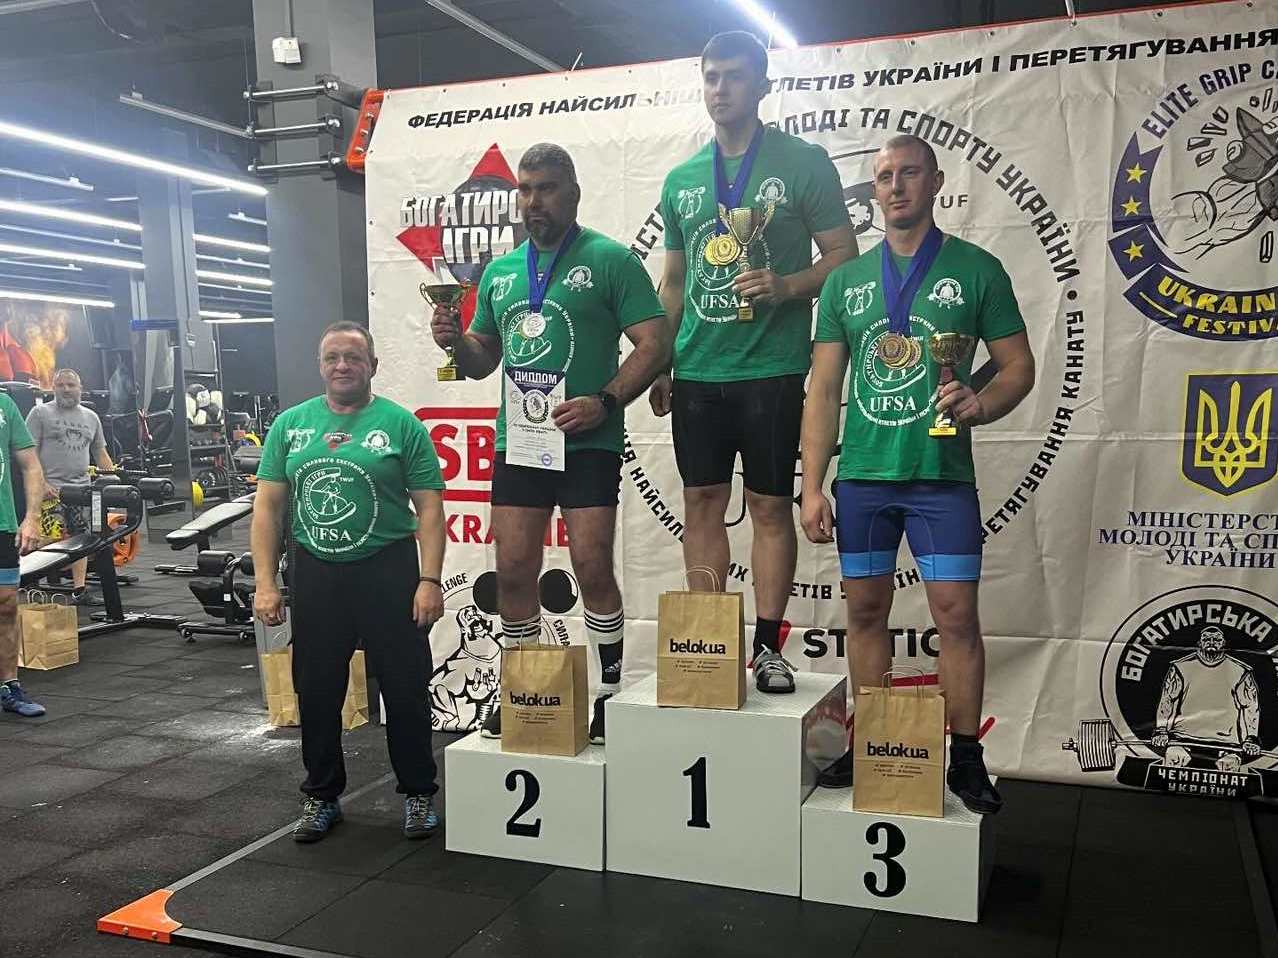 Каменчанин стал чемпионом Украины по армлифтингу в трех упражнениях